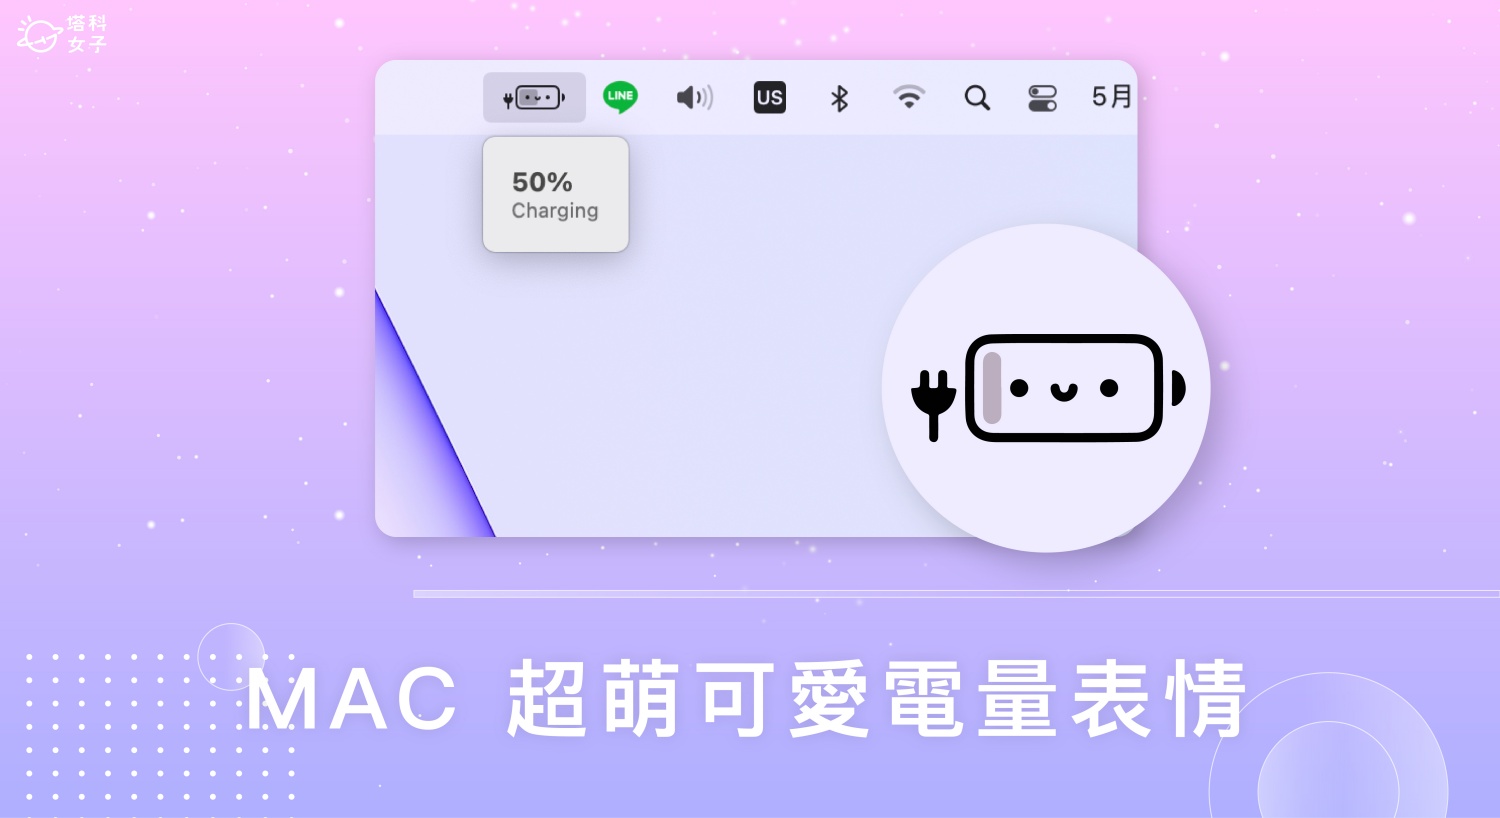 超可愛 Mac 電量表情小工具《Battery Buddy》將電量顯示變笑臉